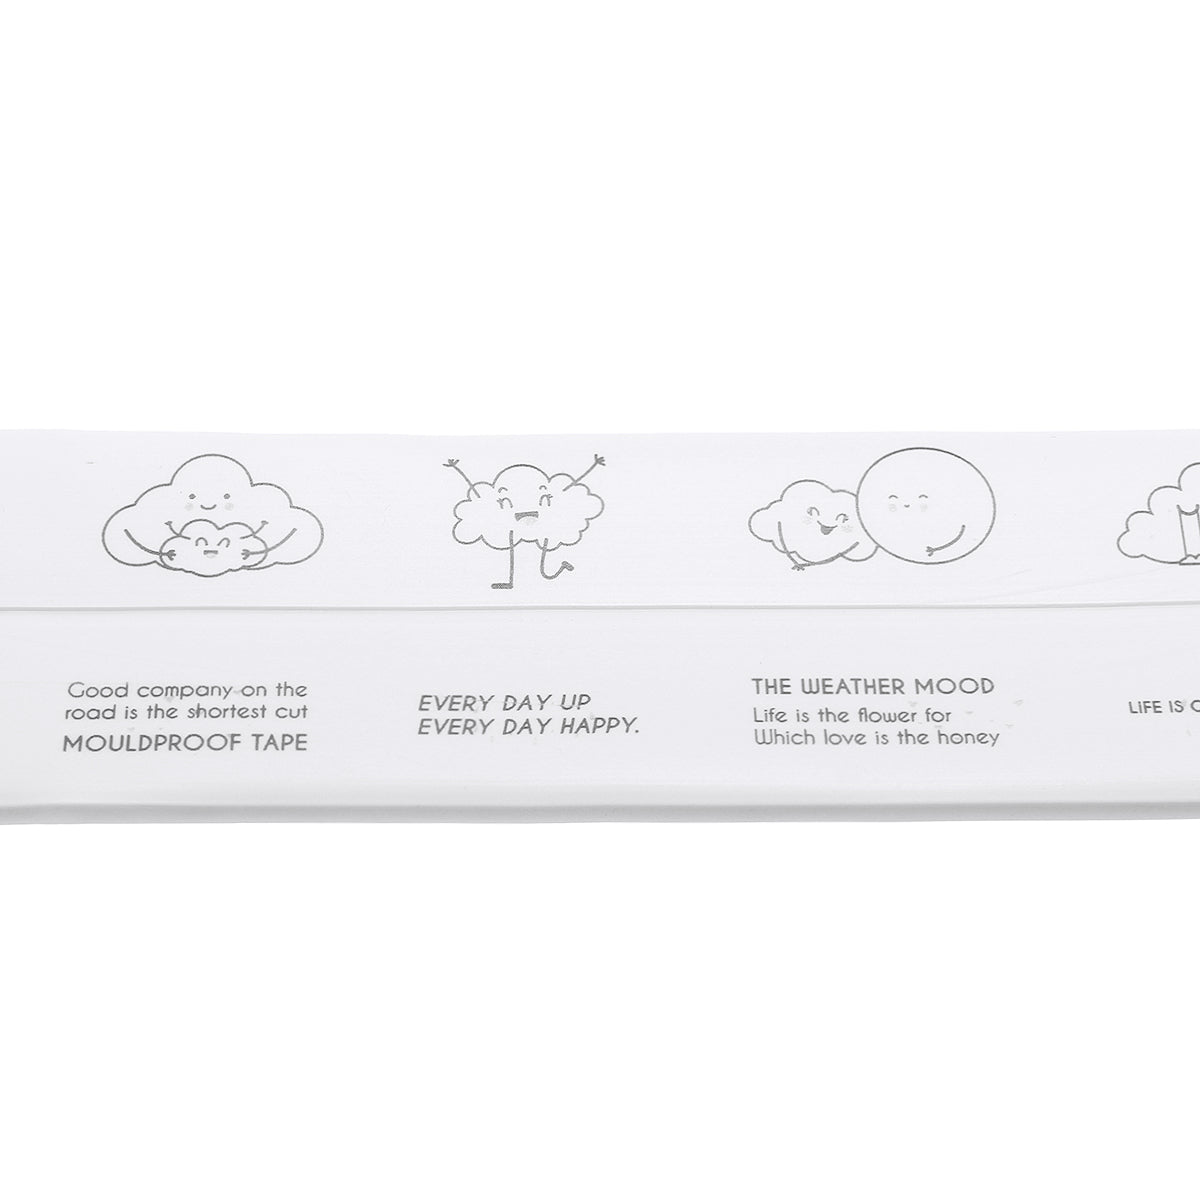 Self-adhesive Mildew Proof Adhesive Strip Waterproof Seam Strip Corner Glue Beauty Wall Stickers